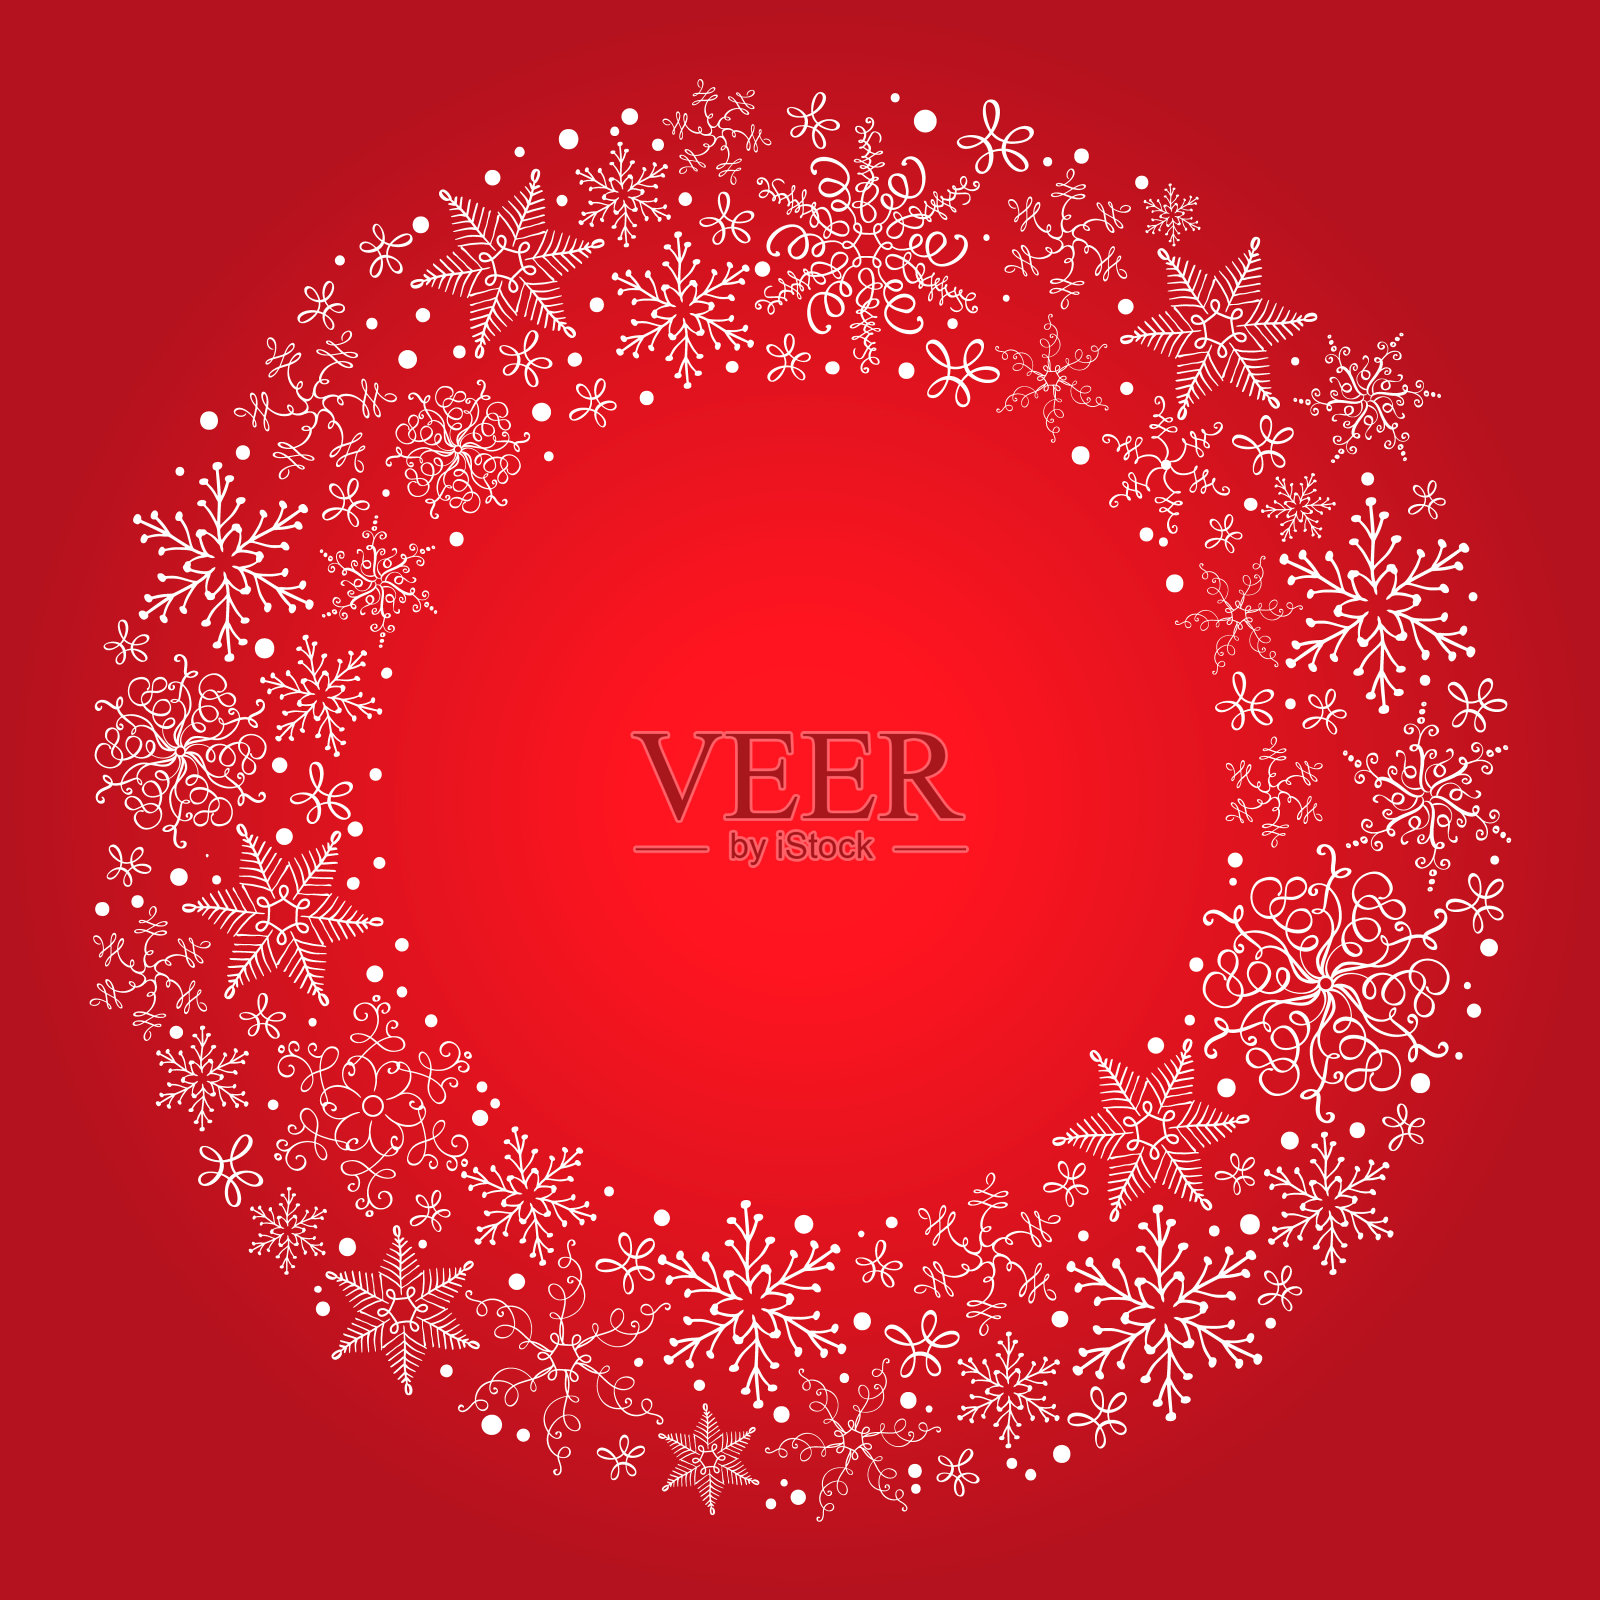 矢量圣诞红色背景与雪花花环插画图片素材